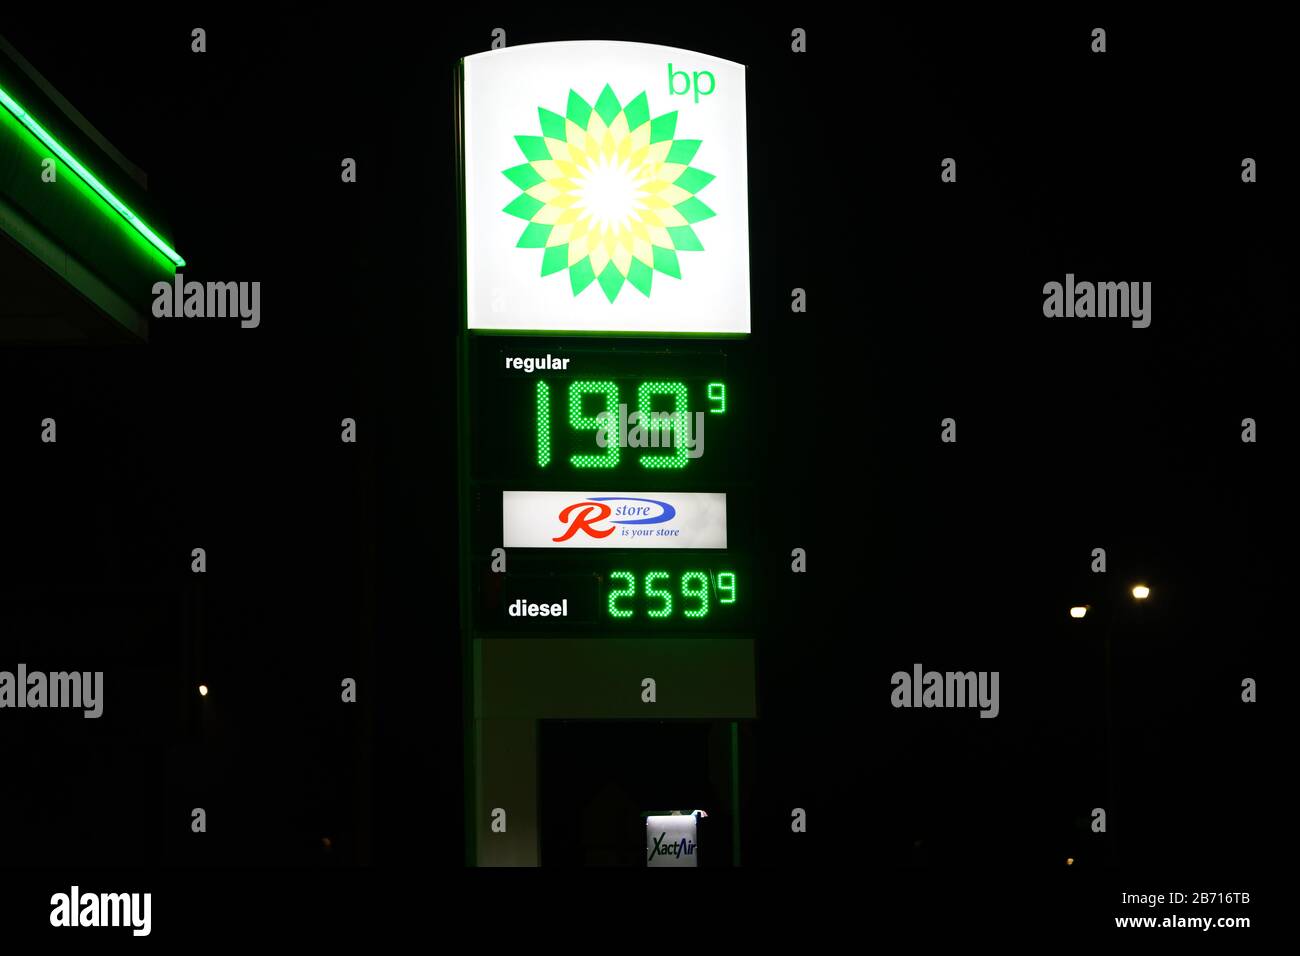 Le stazioni di rifornimento BP, le stazioni di benzina a Fond du Lac hanno prezzi del carburante inferiori a 2 dollari a causa del calo del mercato azionario. Foto Stock